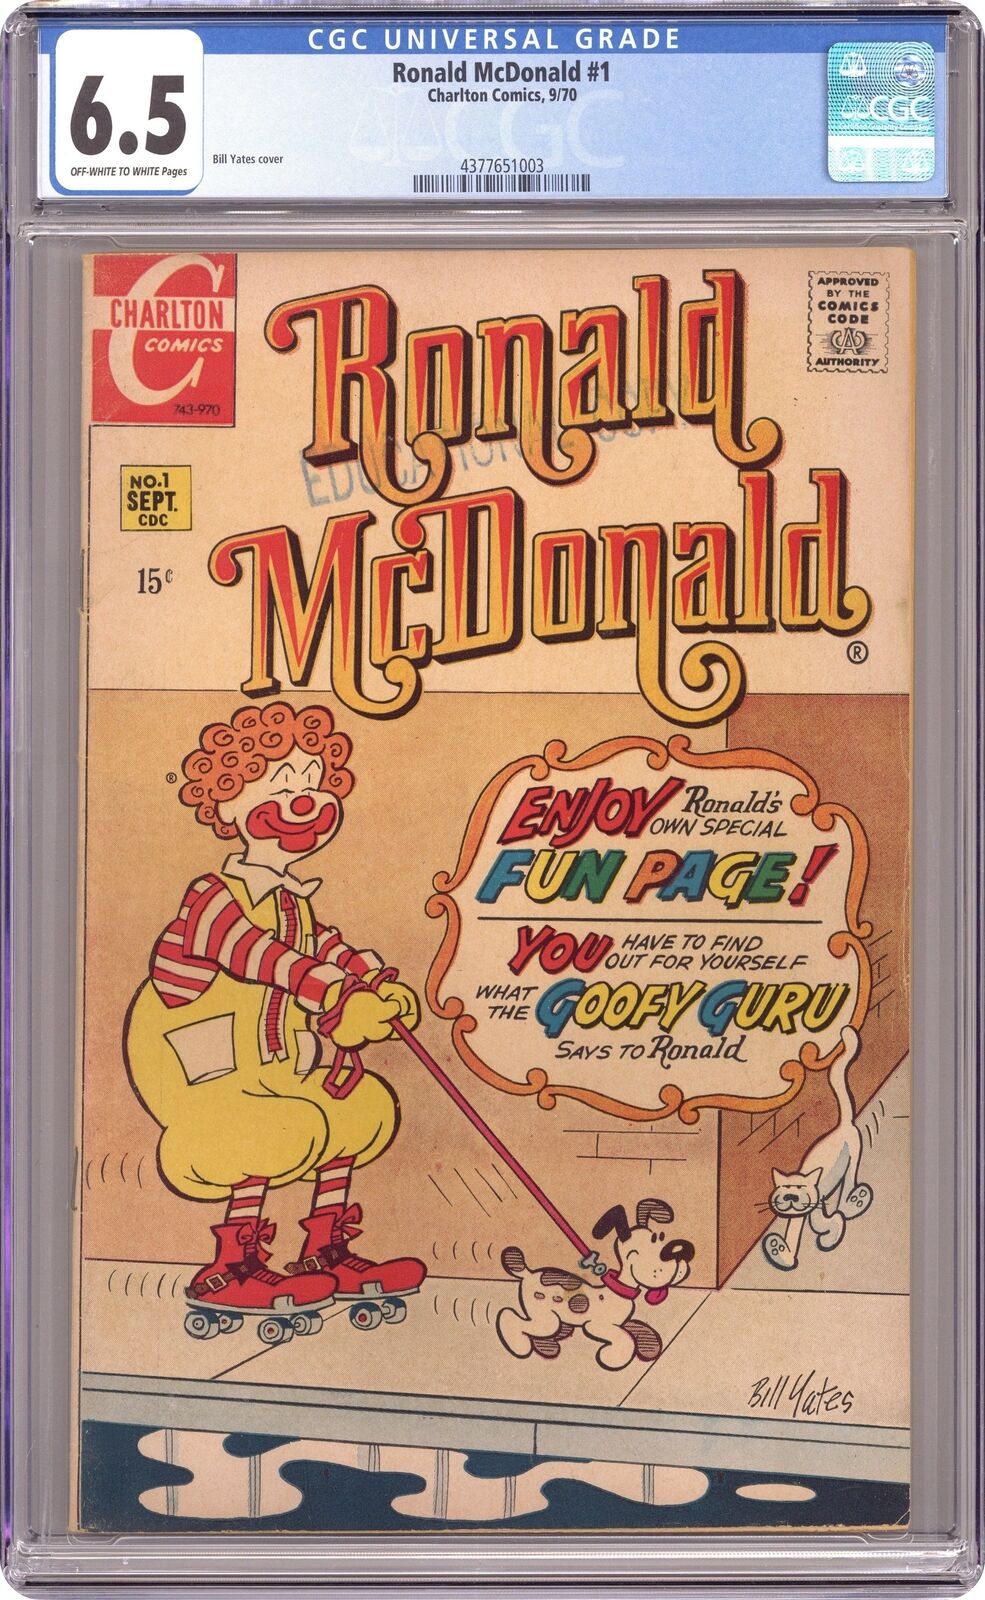 Ronald McDonald #1 CGC 6.5 1970 4377651003